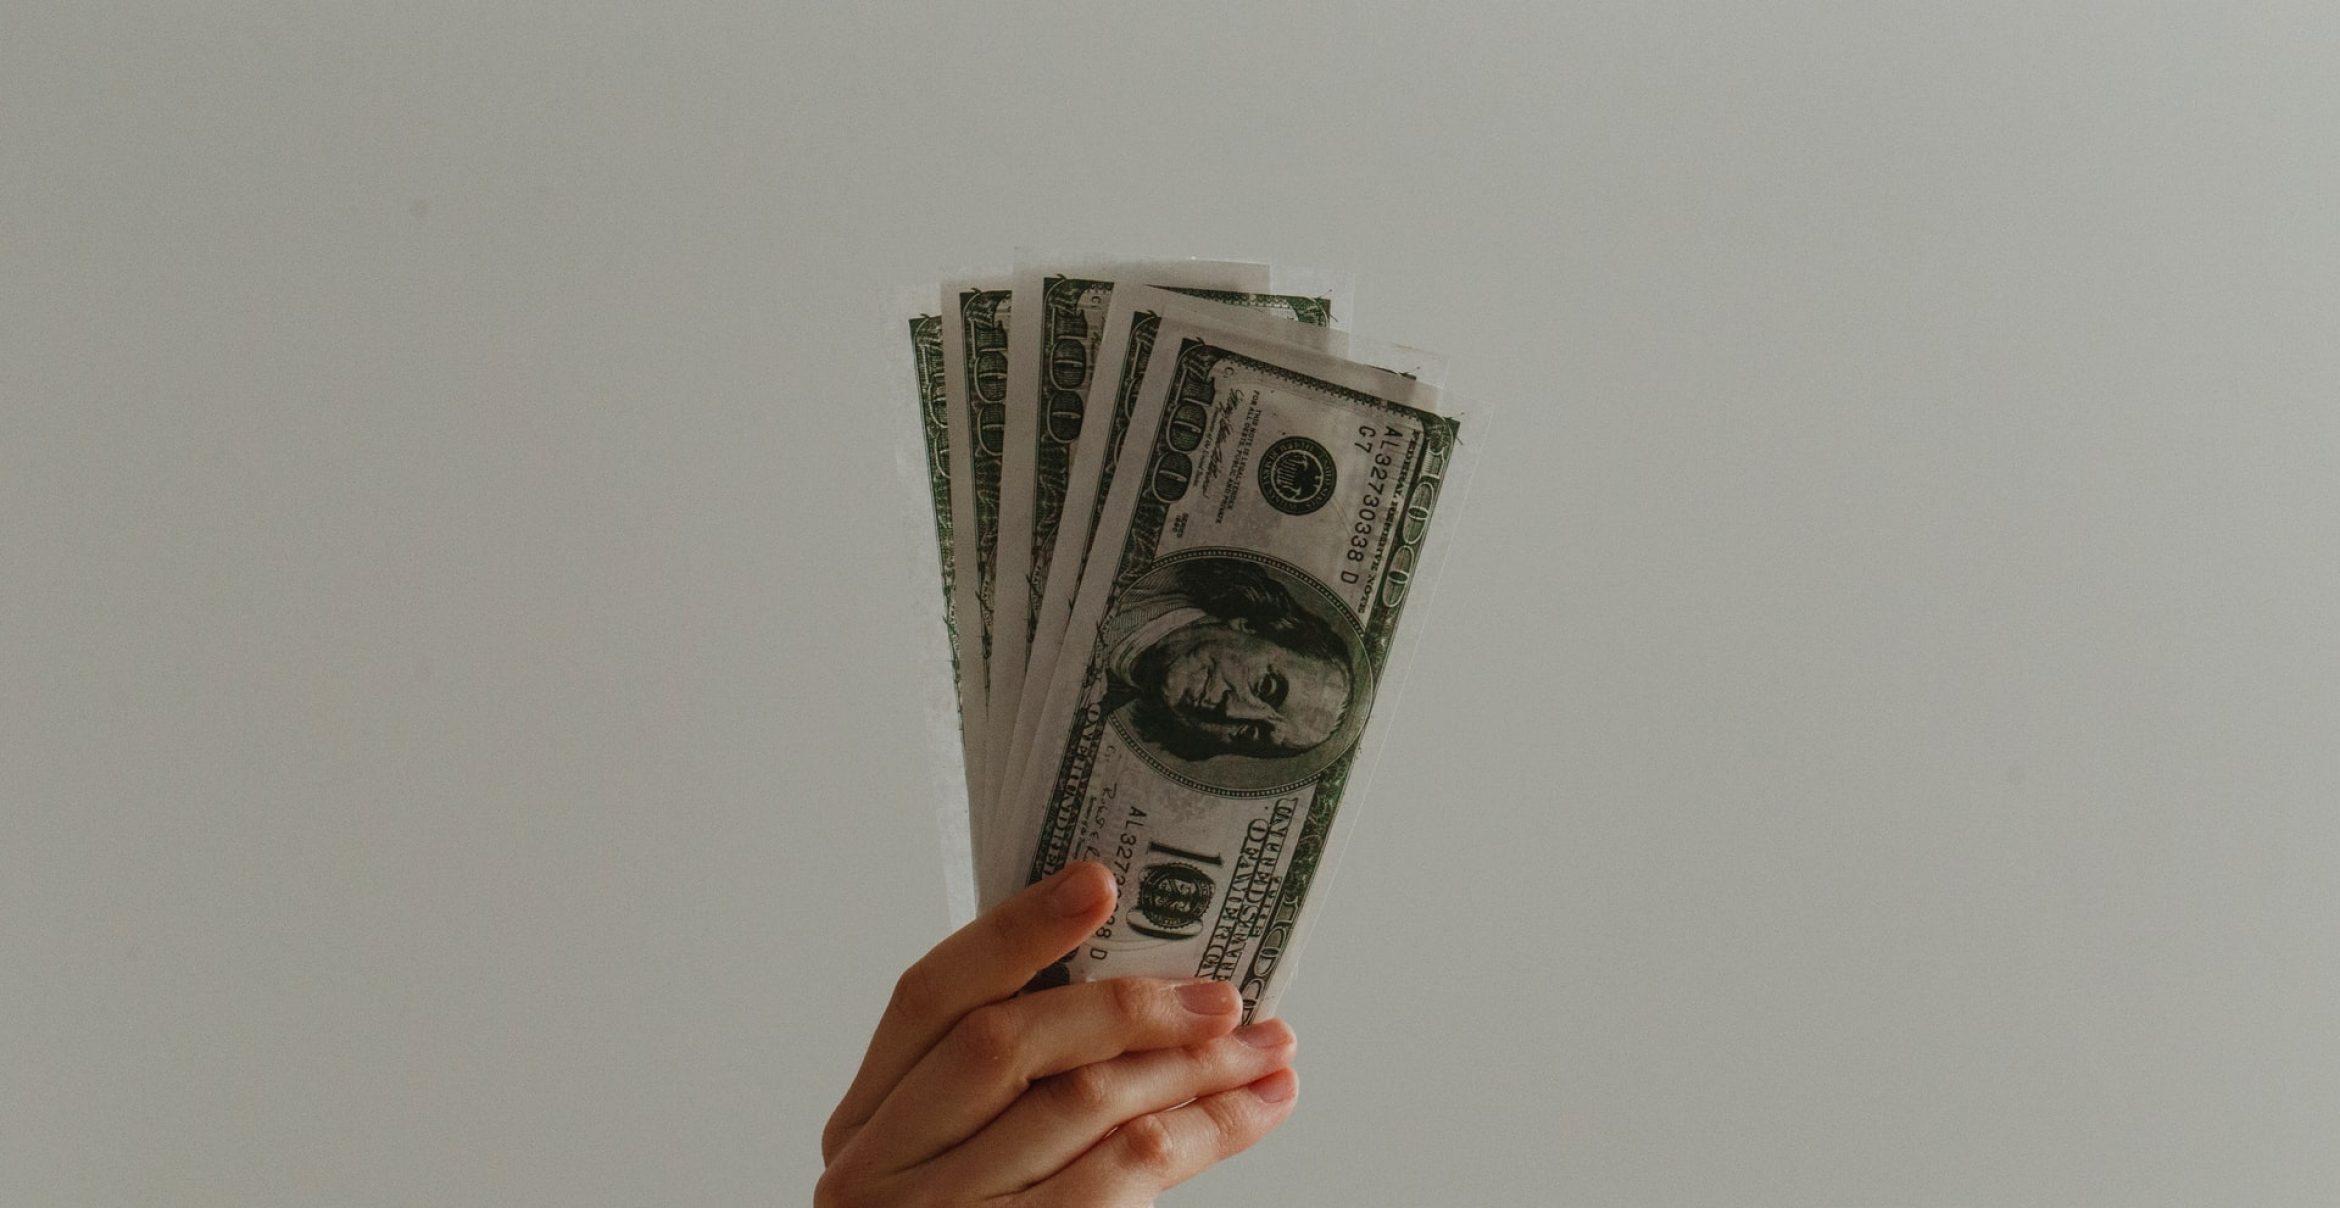 Über Geld spricht man: Bei diesen Finanz-Podcasts könnt ihr etwas lernen